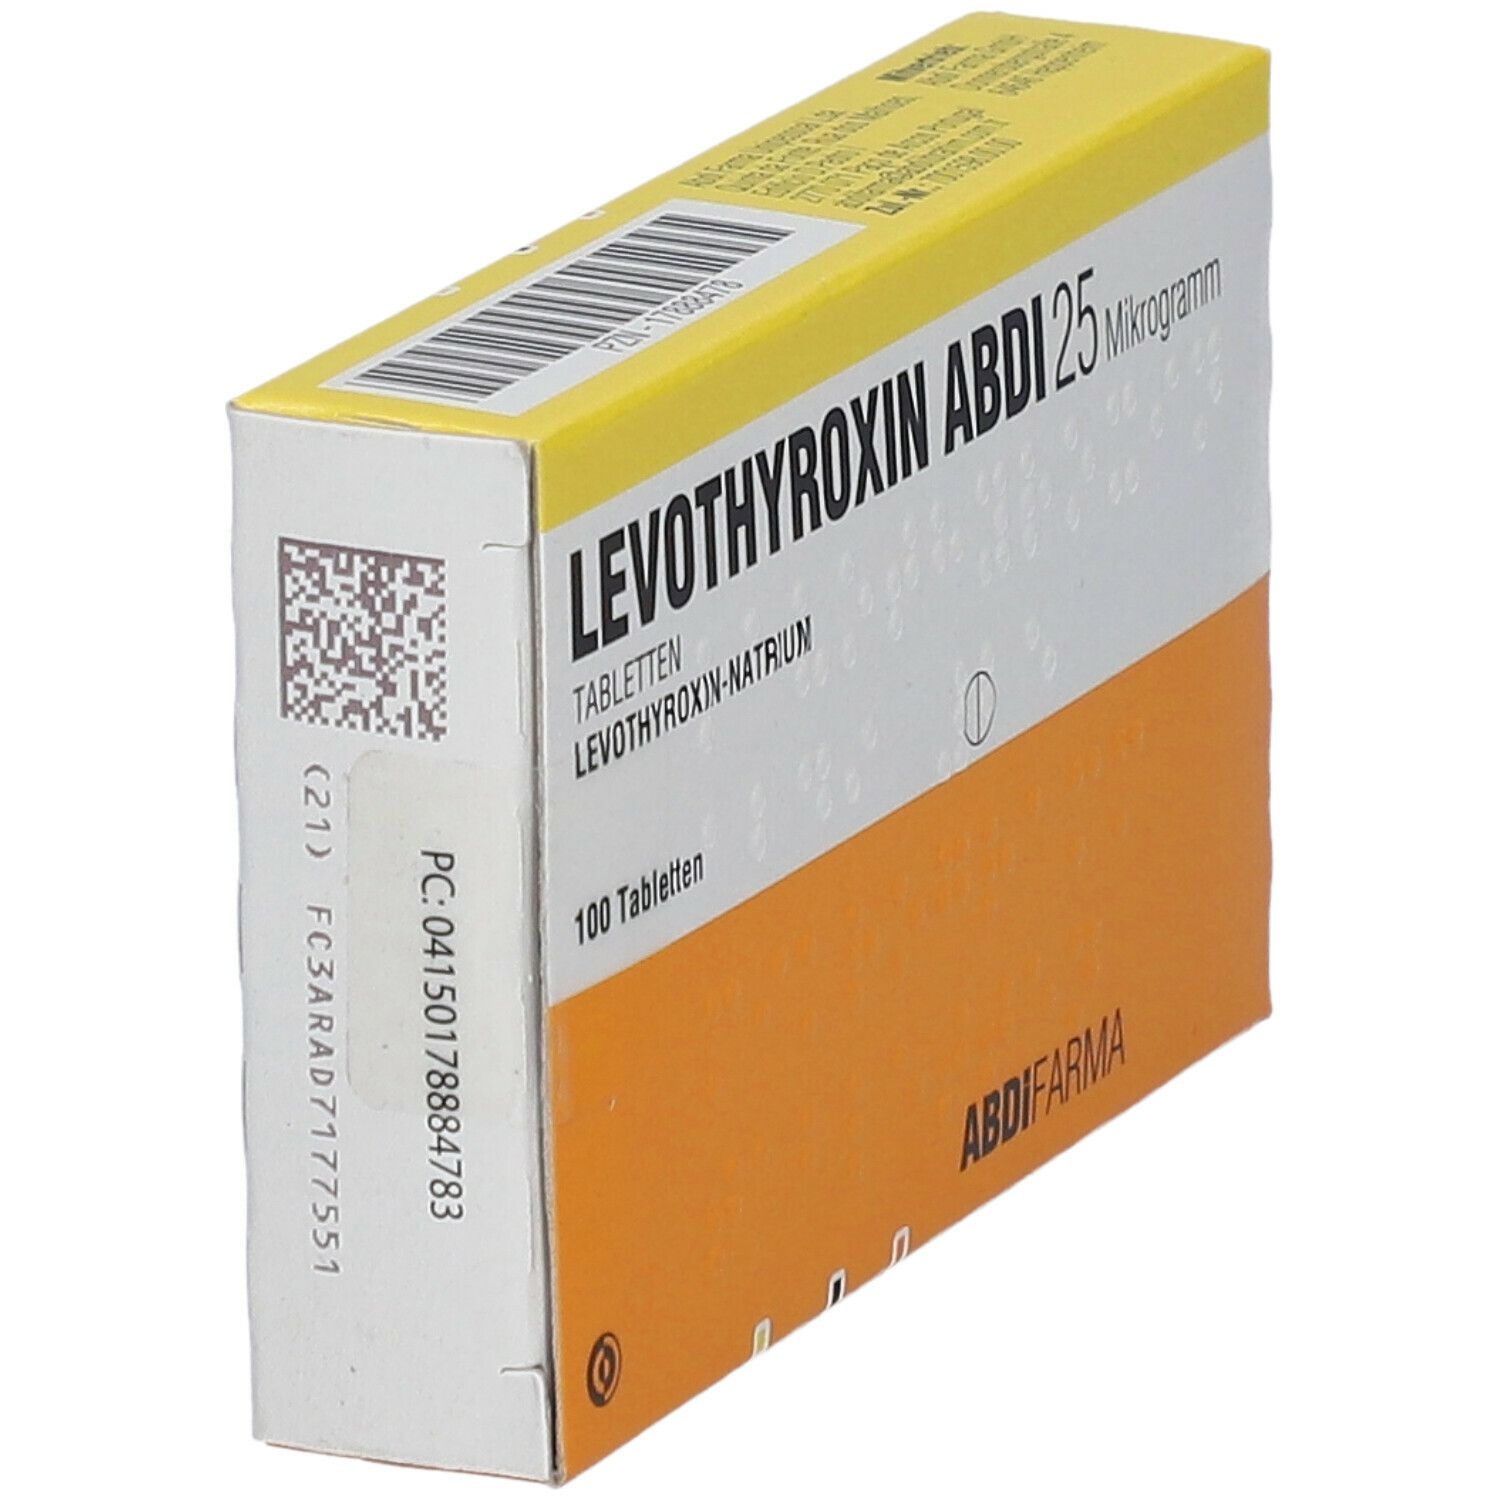 LEVOTHYROXIN Abdi 25 Mikrogramm Tabletten